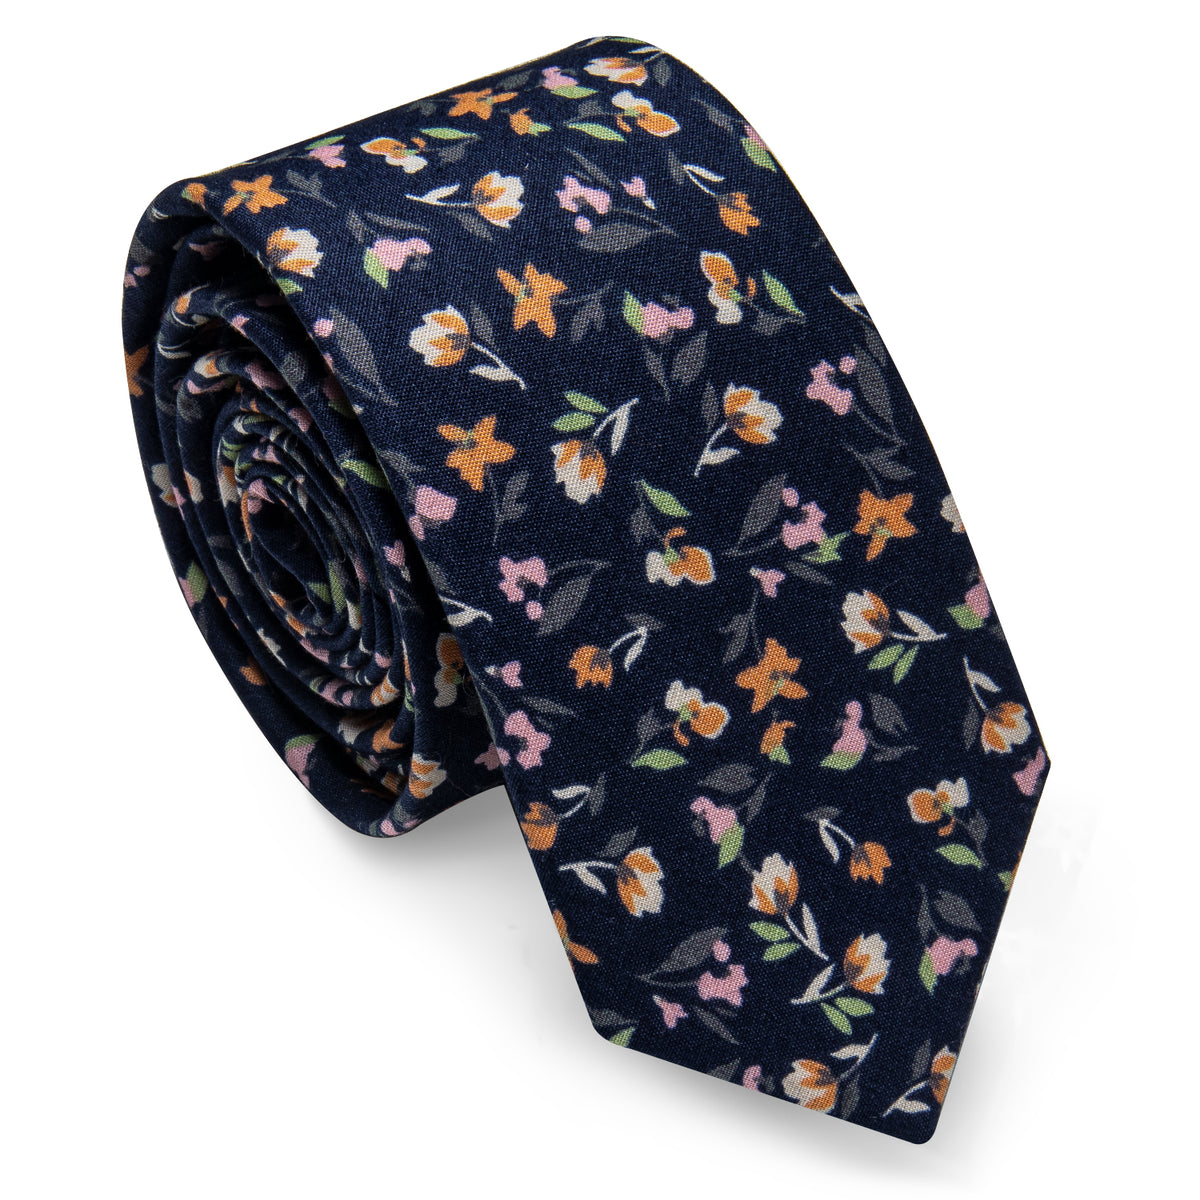 Dark Blue Floral Printed Skinny Tie Set with Tie Clip